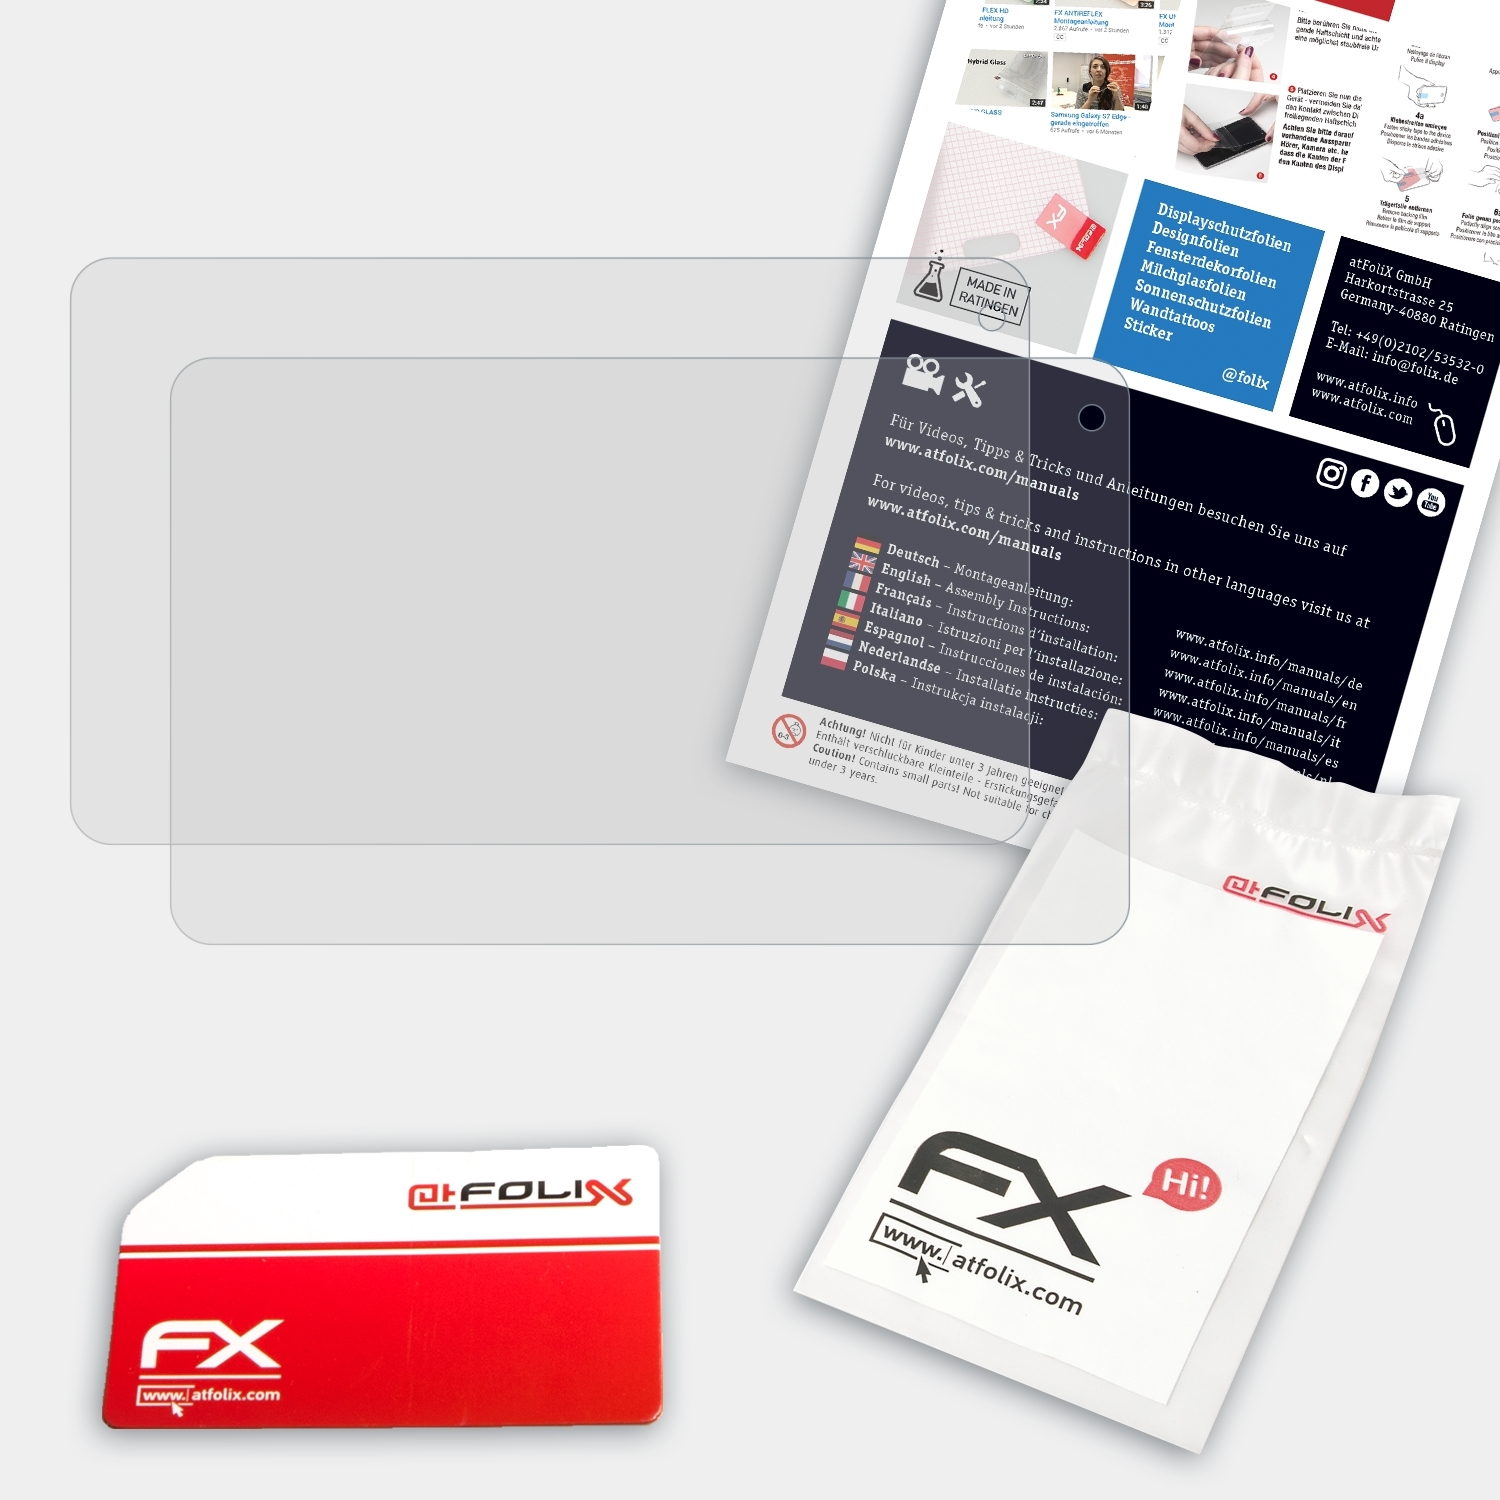 ATFOLIX 2x FX-Antireflex Infinite+ Displayschutz(für Polaroid 10.1)